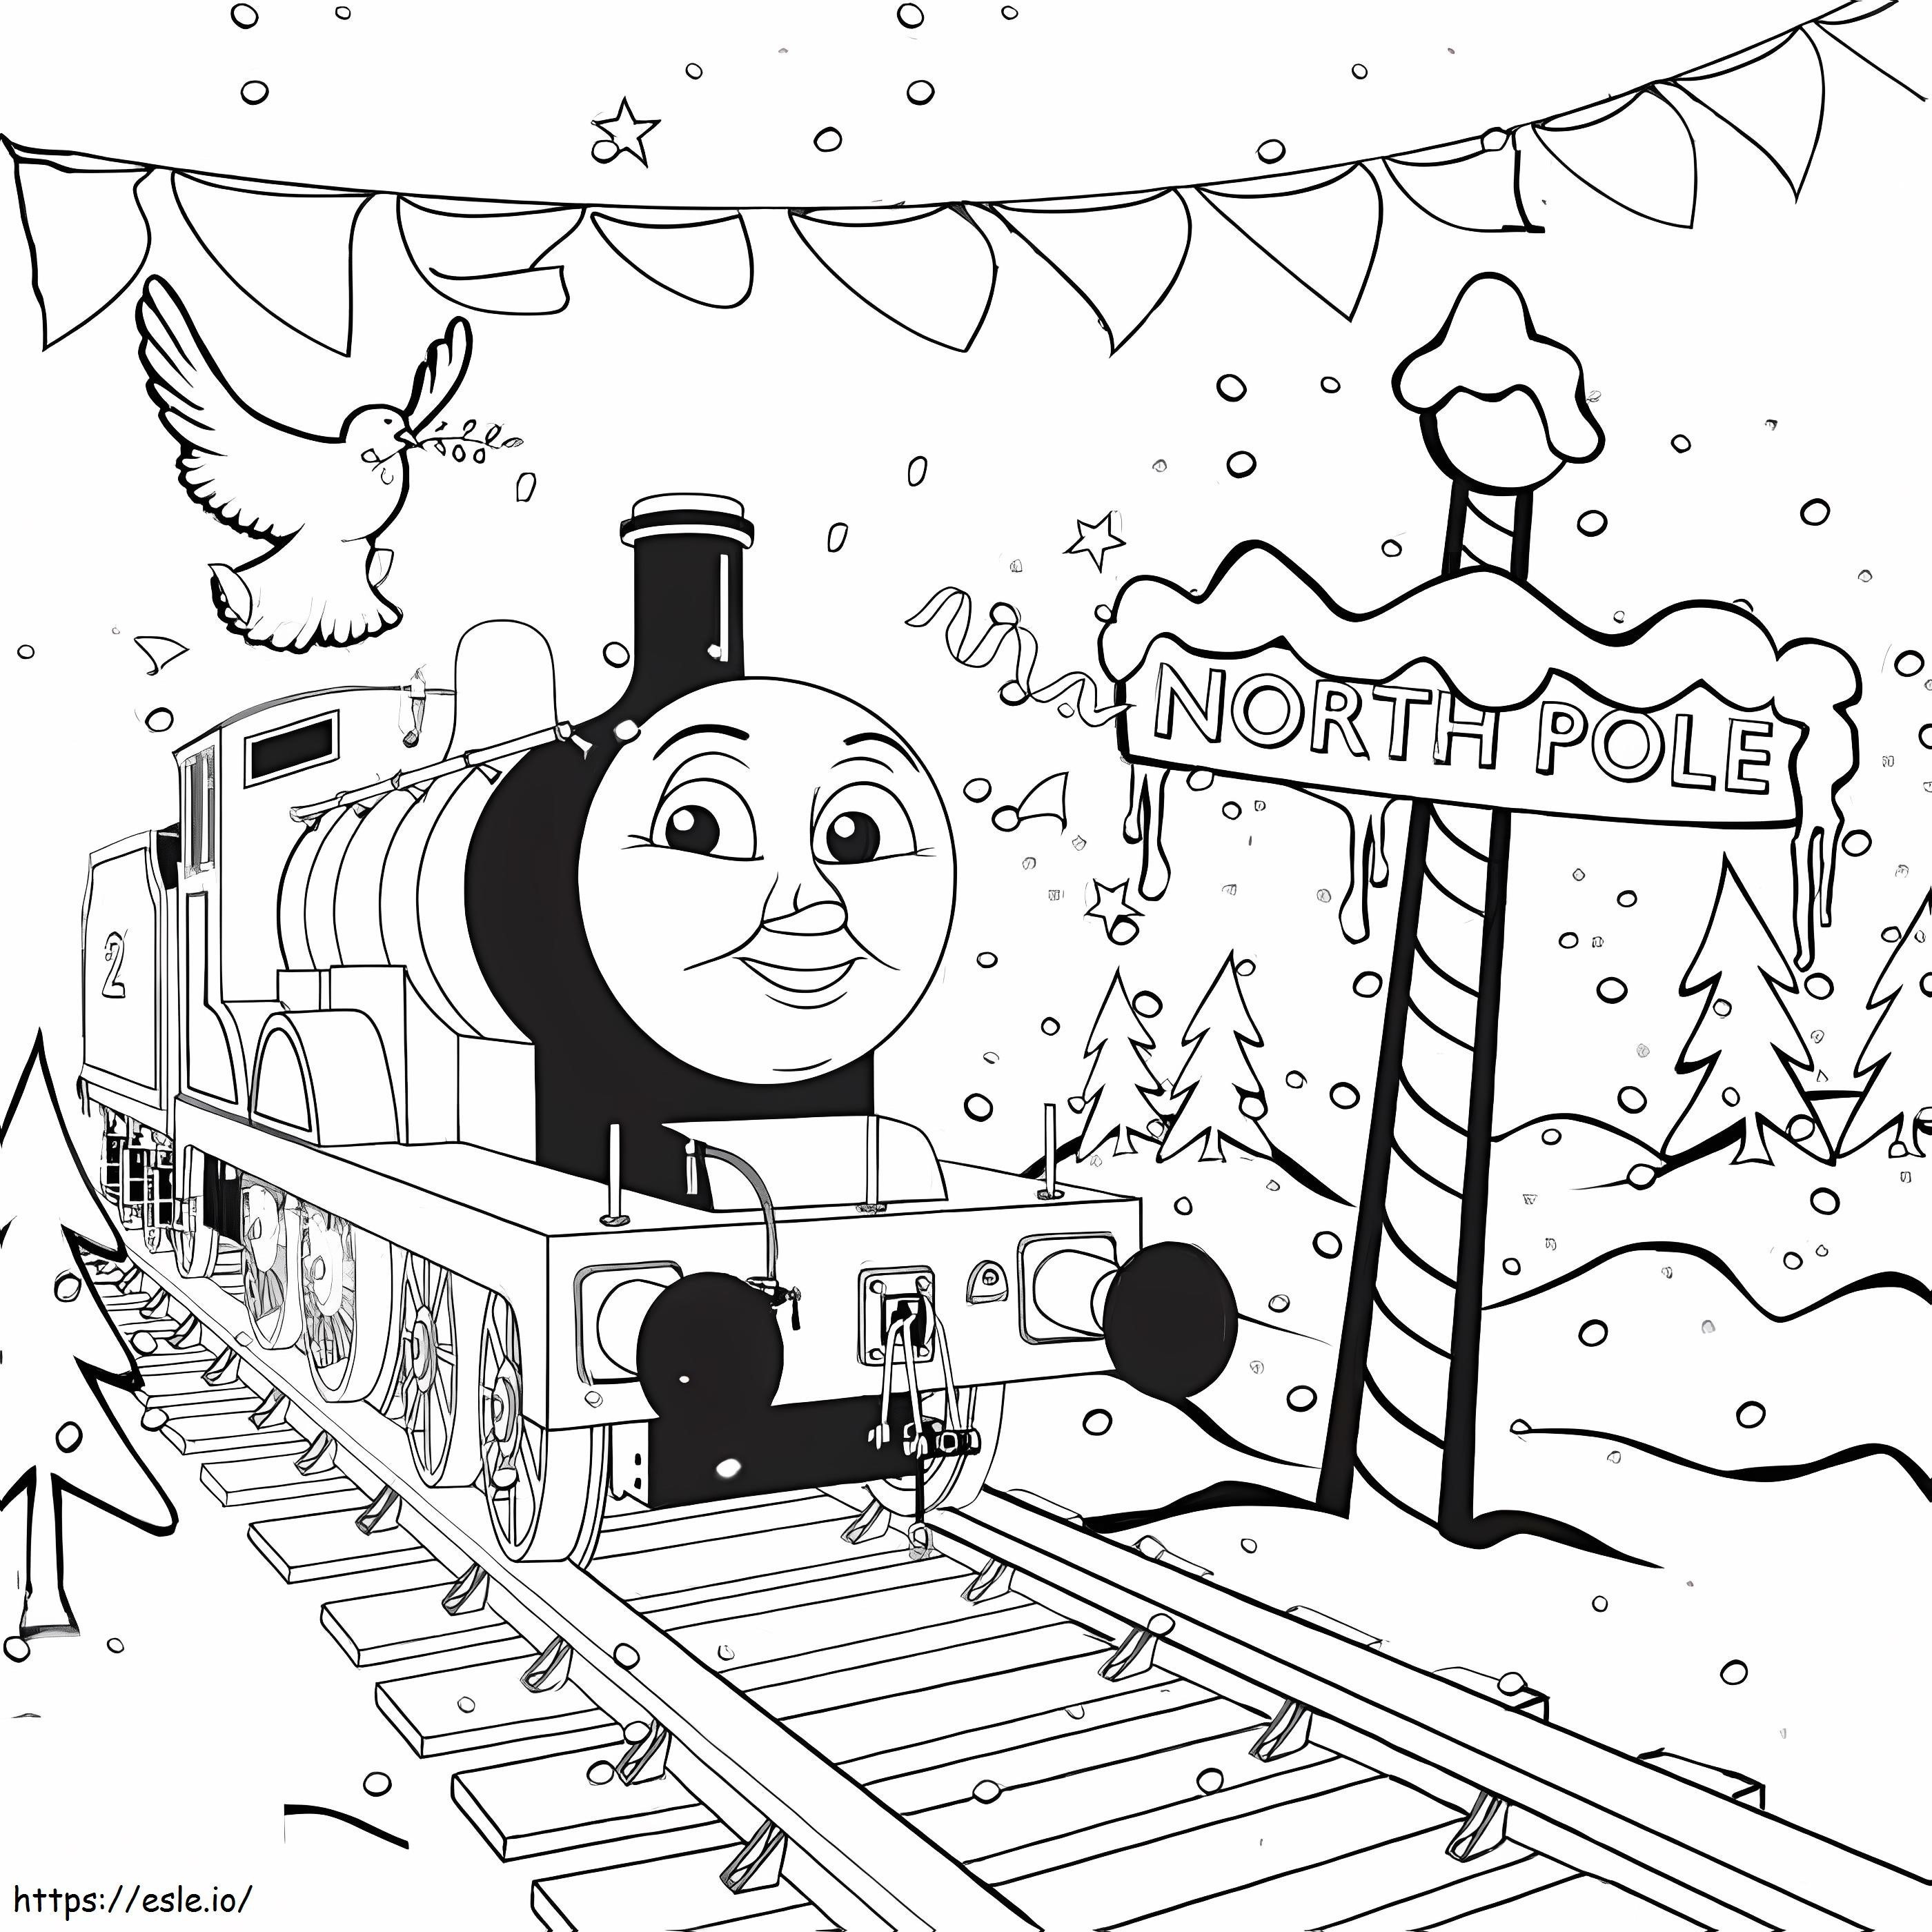 Thomas Il treno d'inverno da colorare